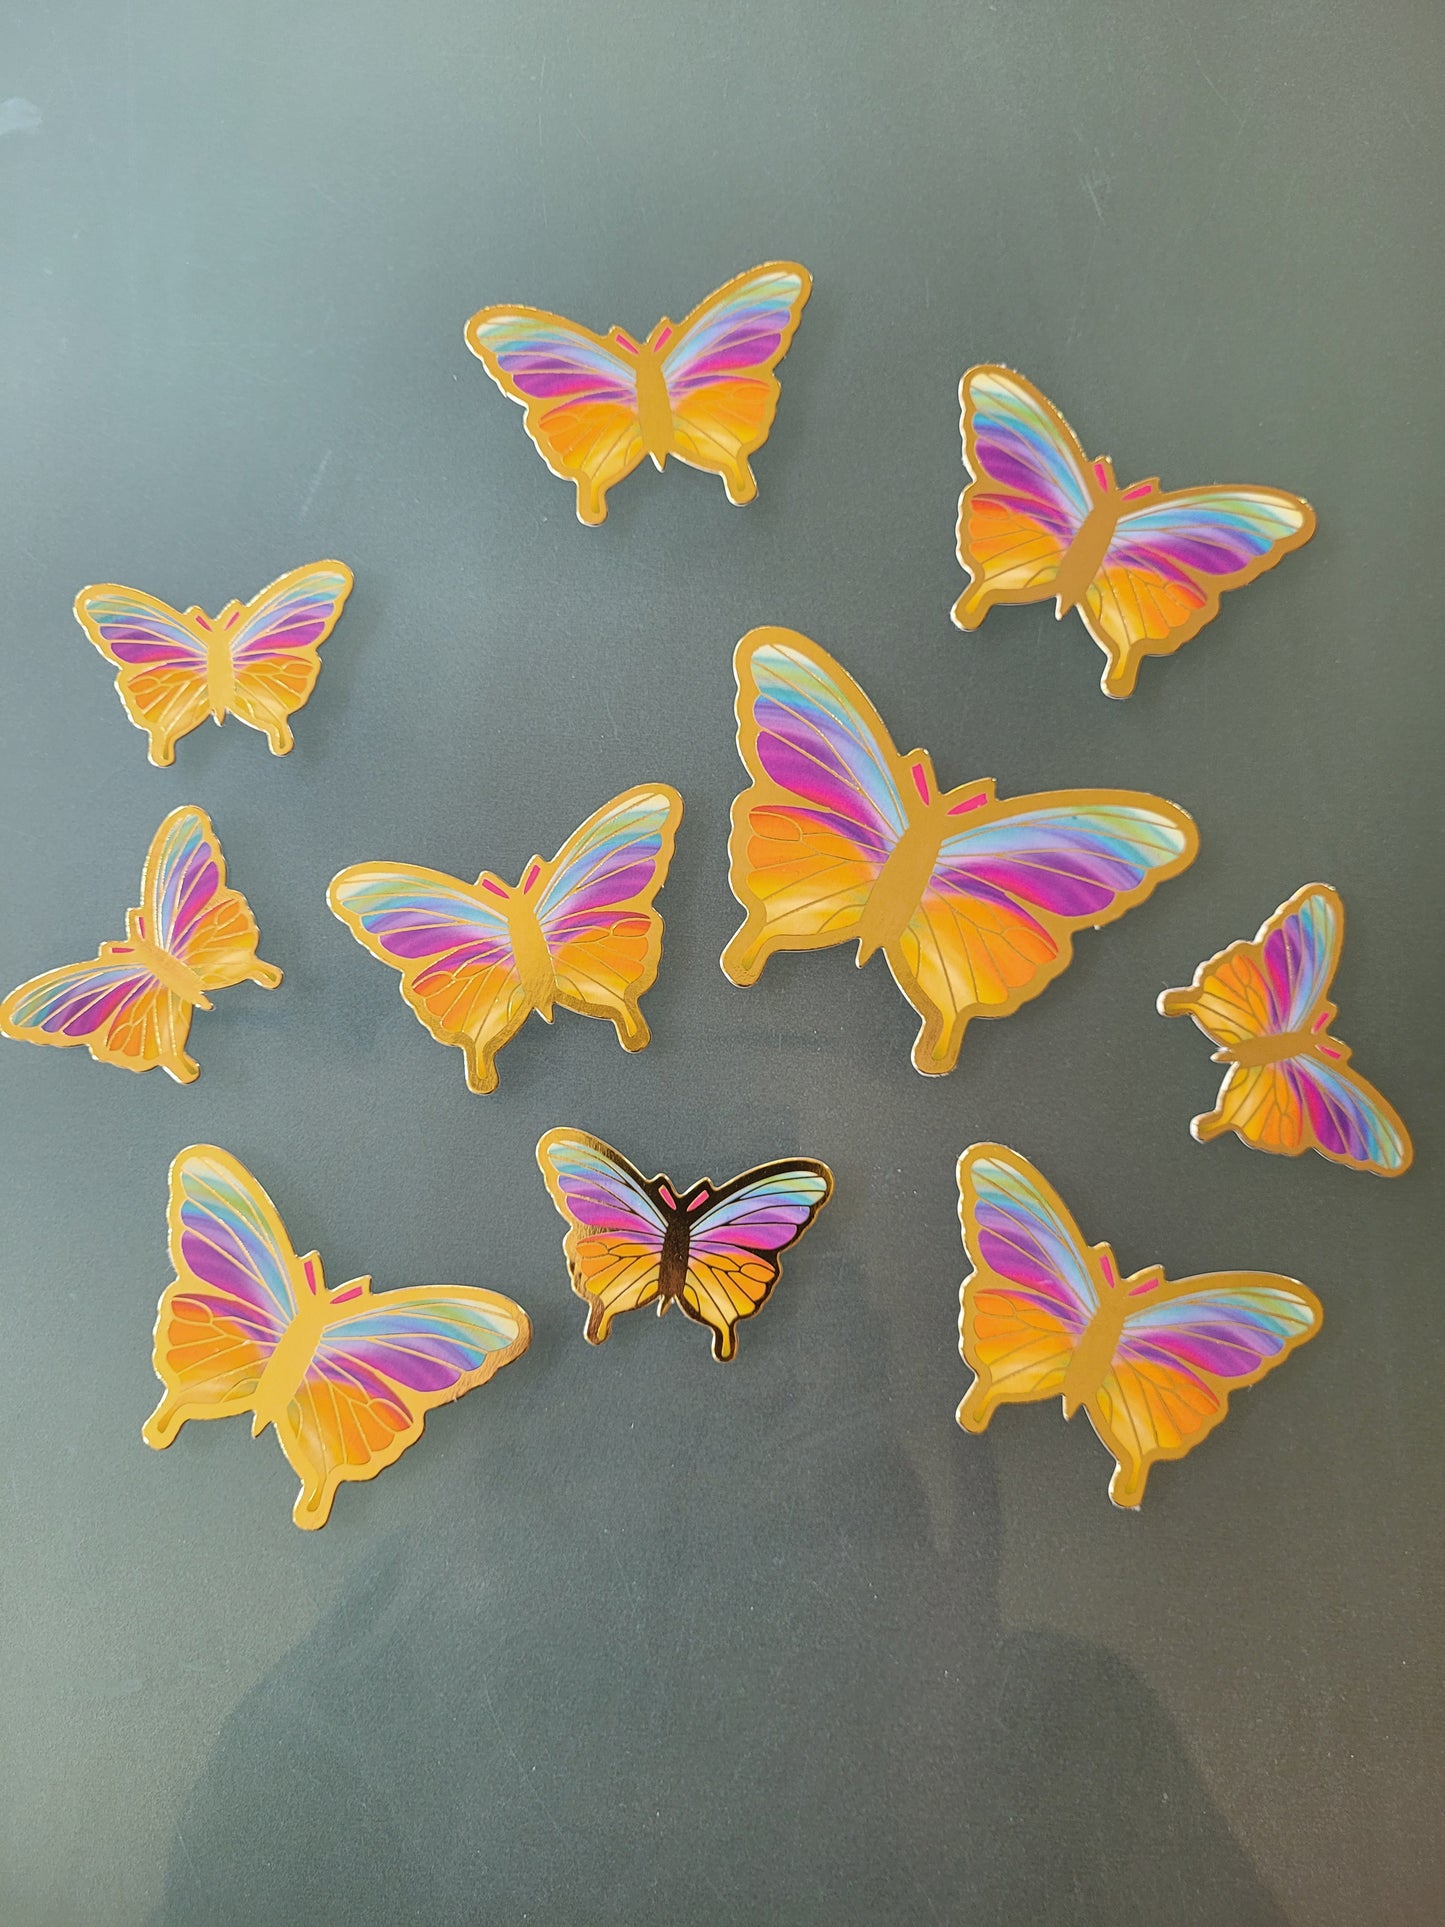 Schmetterlinge bunt Regenbogen Tortenstecker Papierdeko